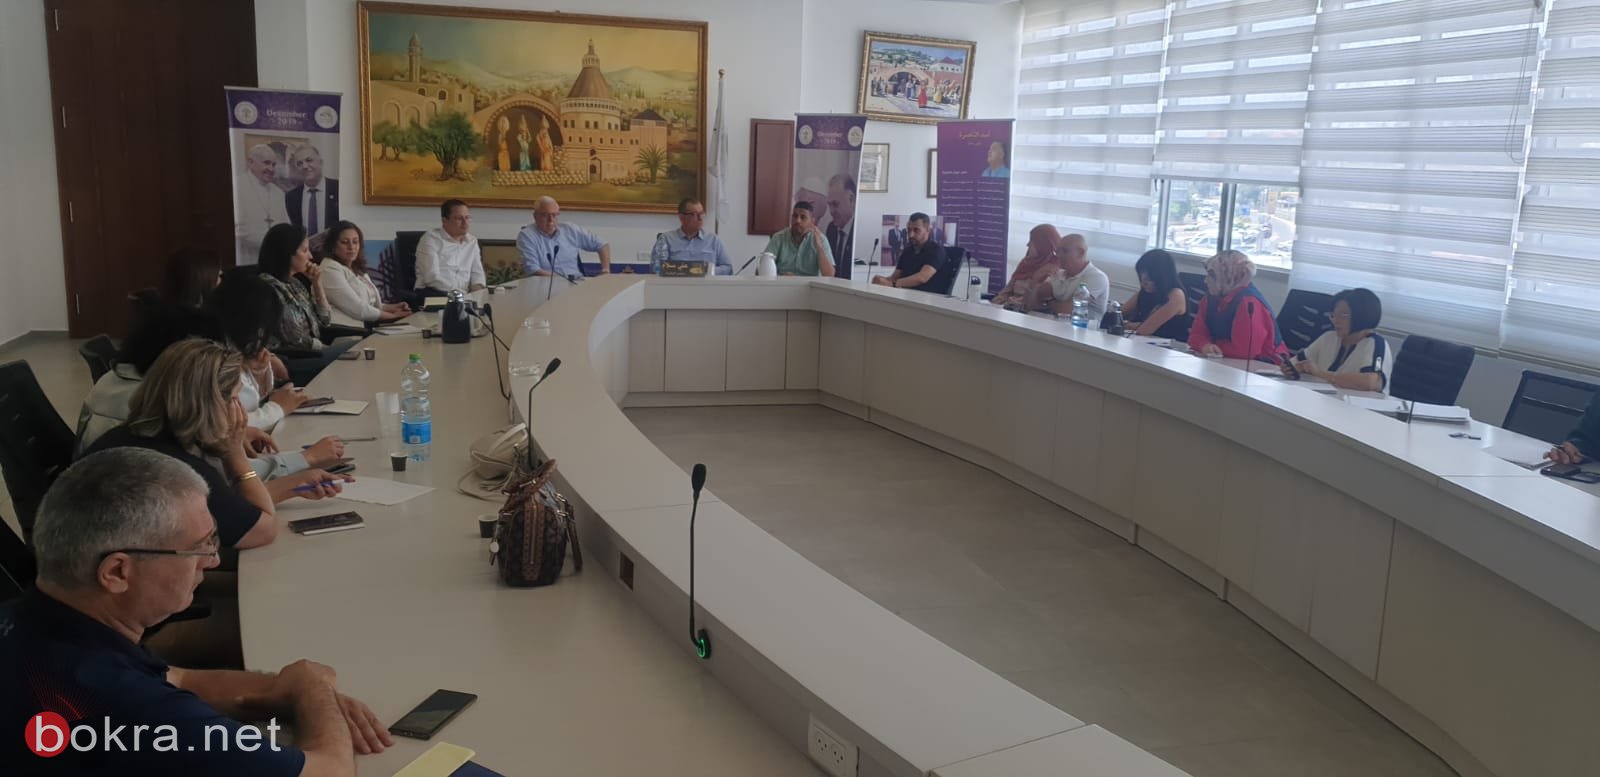 لجنة التوجيه لتقليل مرض السكري تعقد اجتماعها في بلدية الناصرة.-4